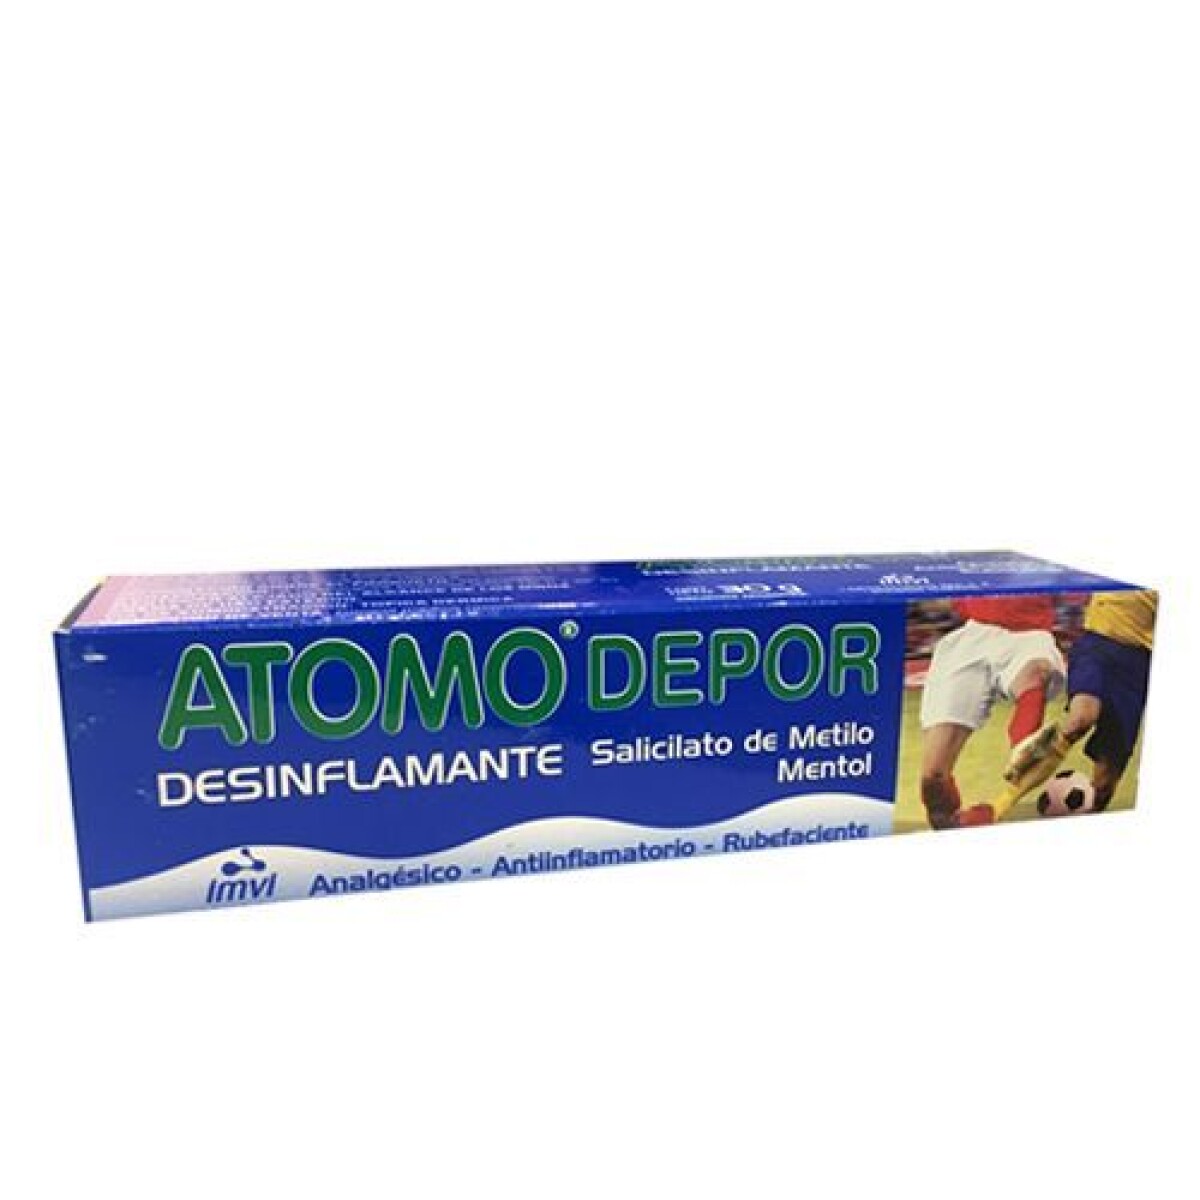 ATOMO DEPOR DESINFLAMANTE 30 GR 